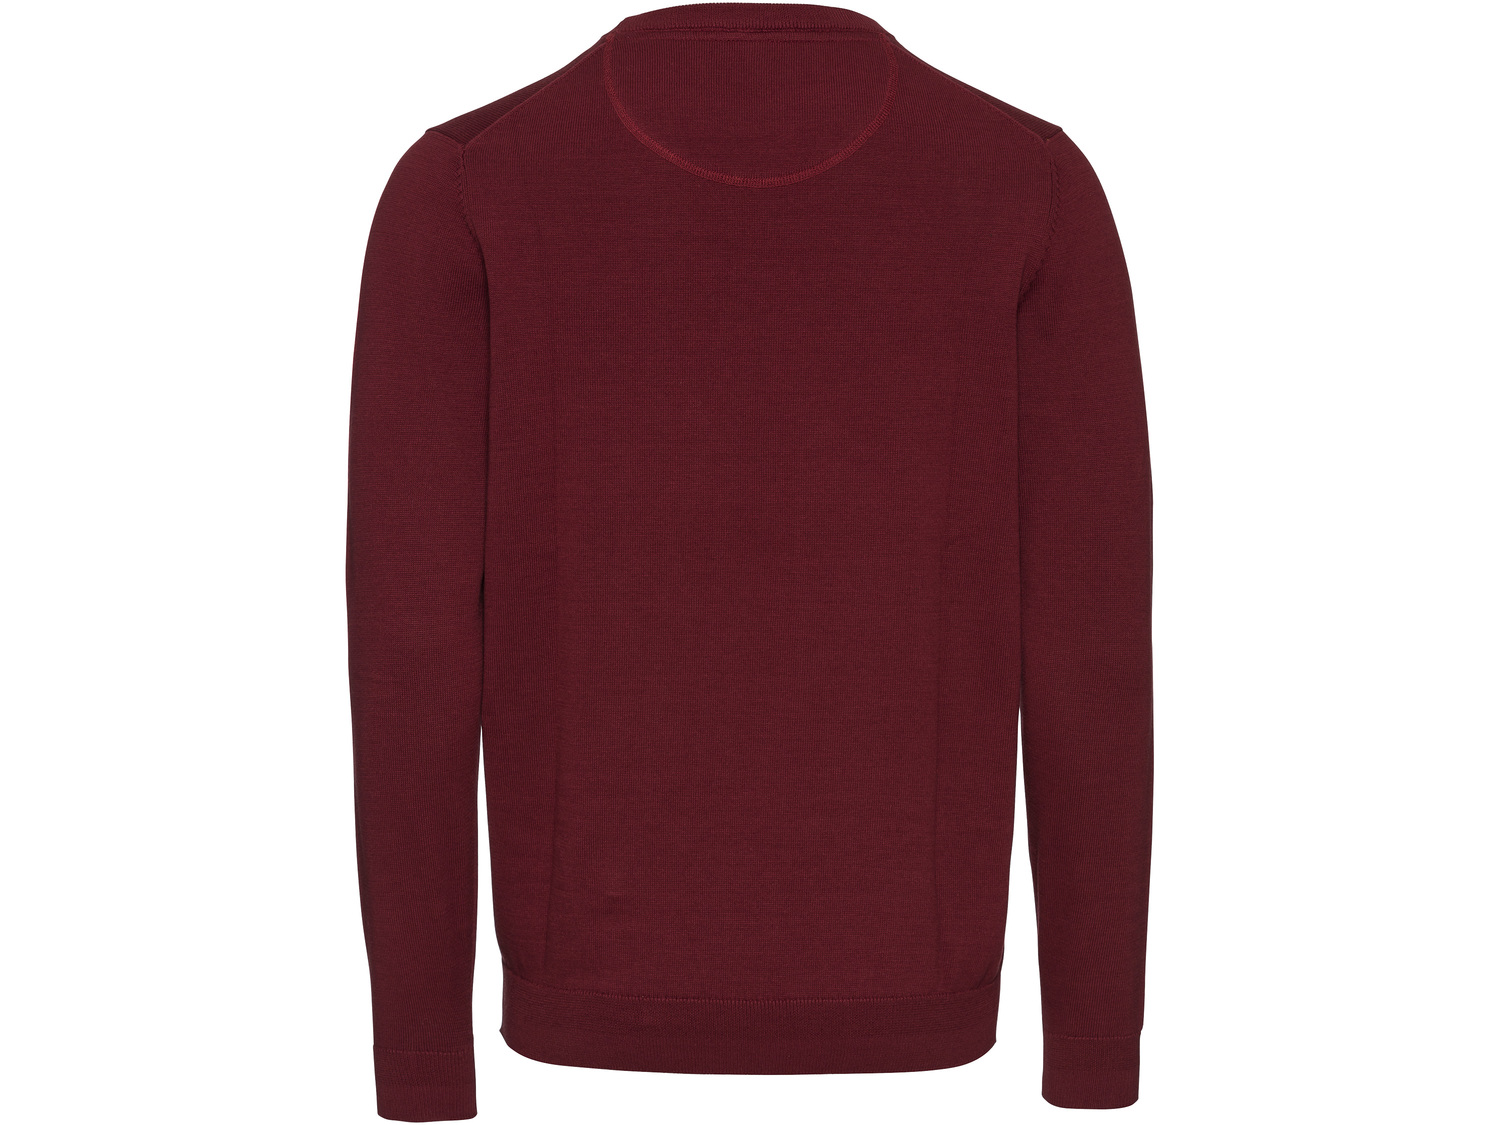 Sweter męski Livergy, cena 34,99 PLN 
- 100% bawełny
- rozmiary: M-XL
Dostępne ...